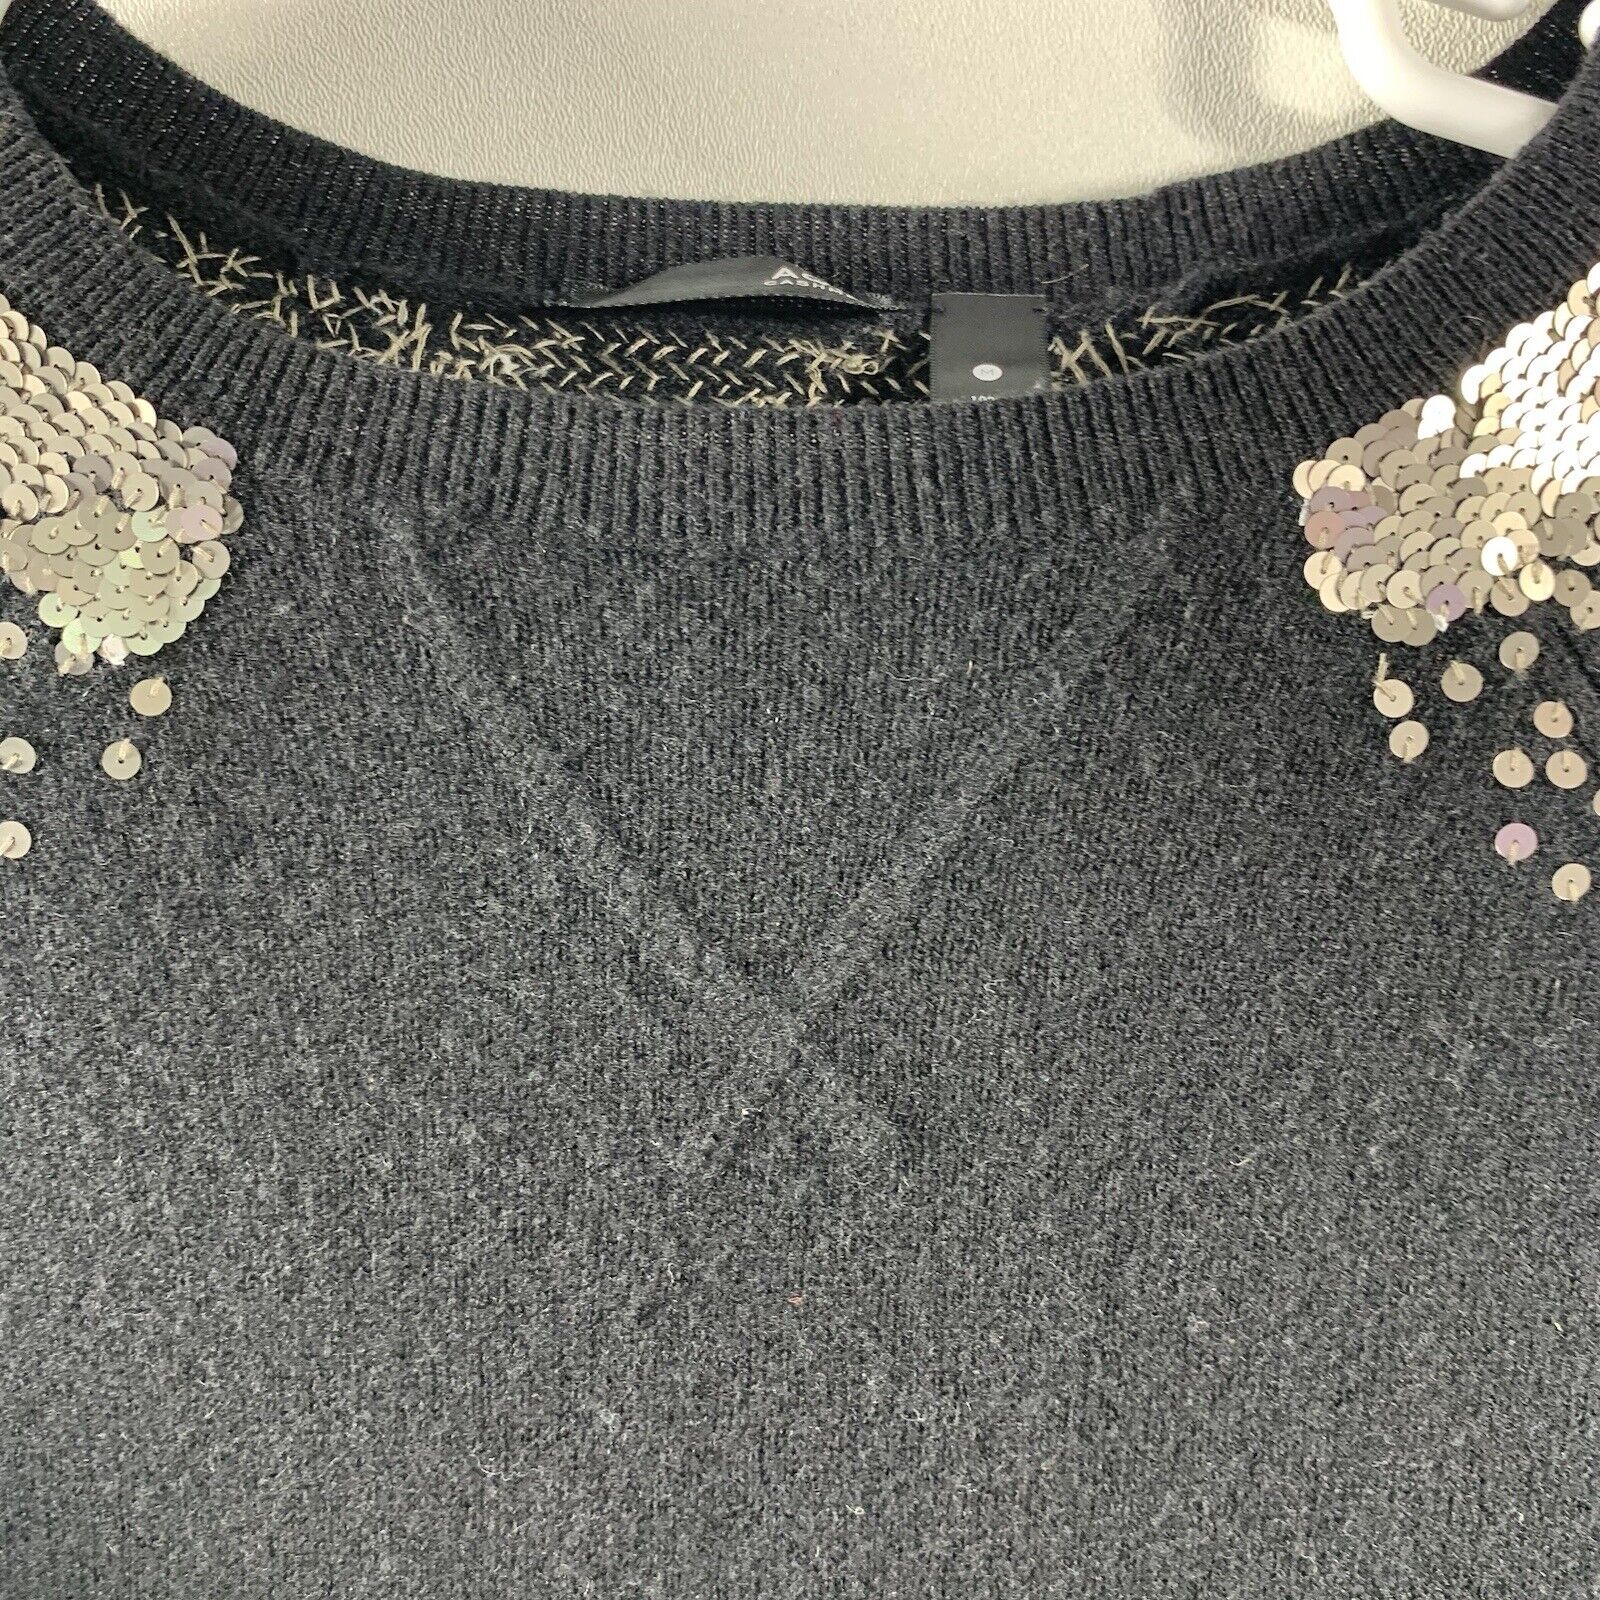 Aqua Black Cashmere Sweater Sequins Dressy Capsul… - image 3